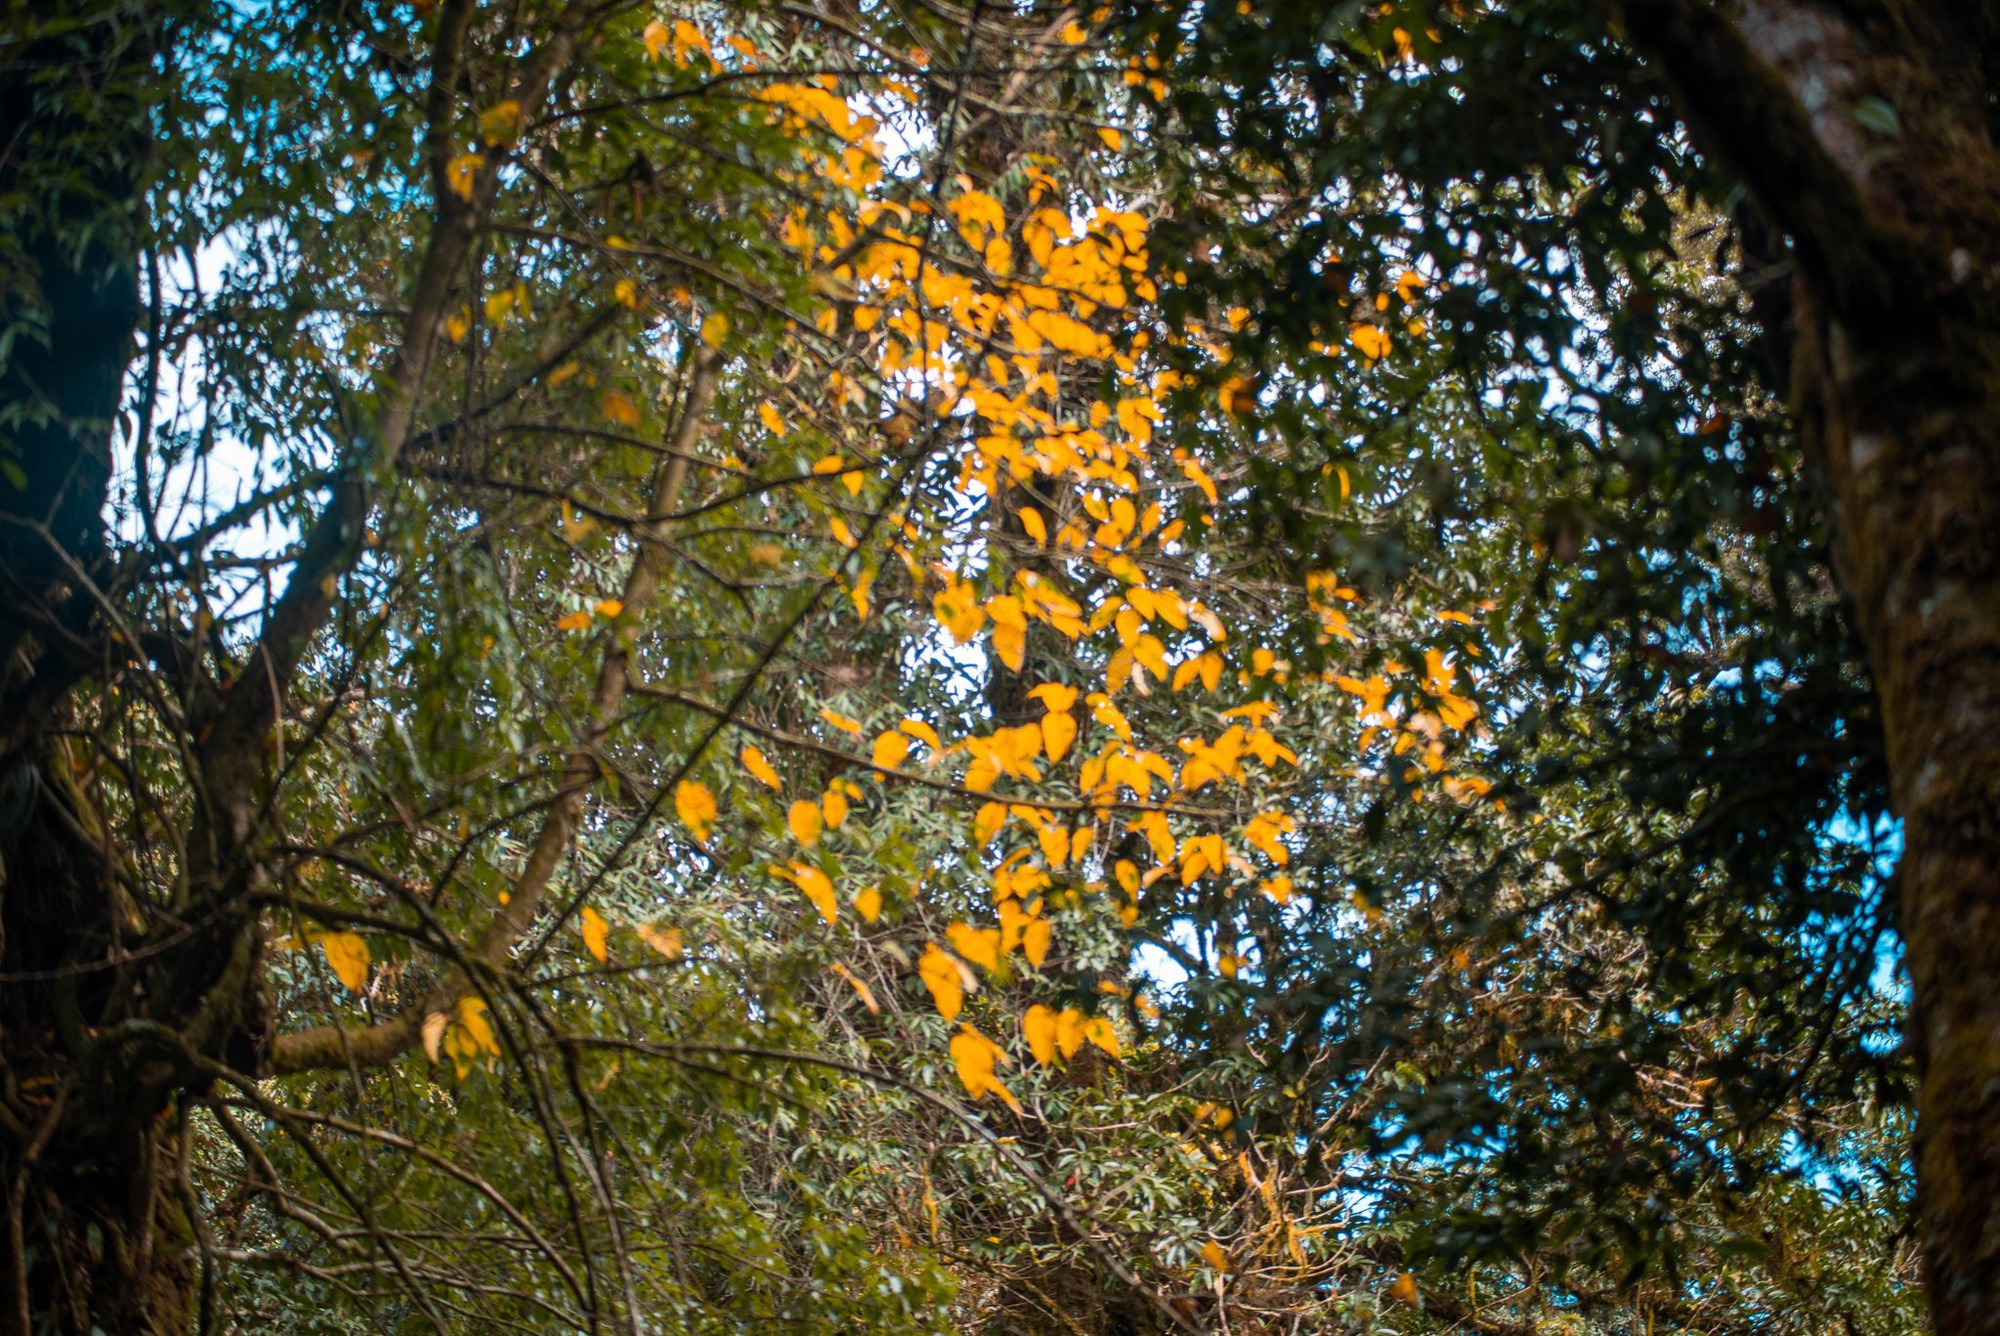 Mùa lá phong rực sắc đỏ vàng trên cung đường trekking ấn tượng ngay tại Việt Nam - Ảnh 13.